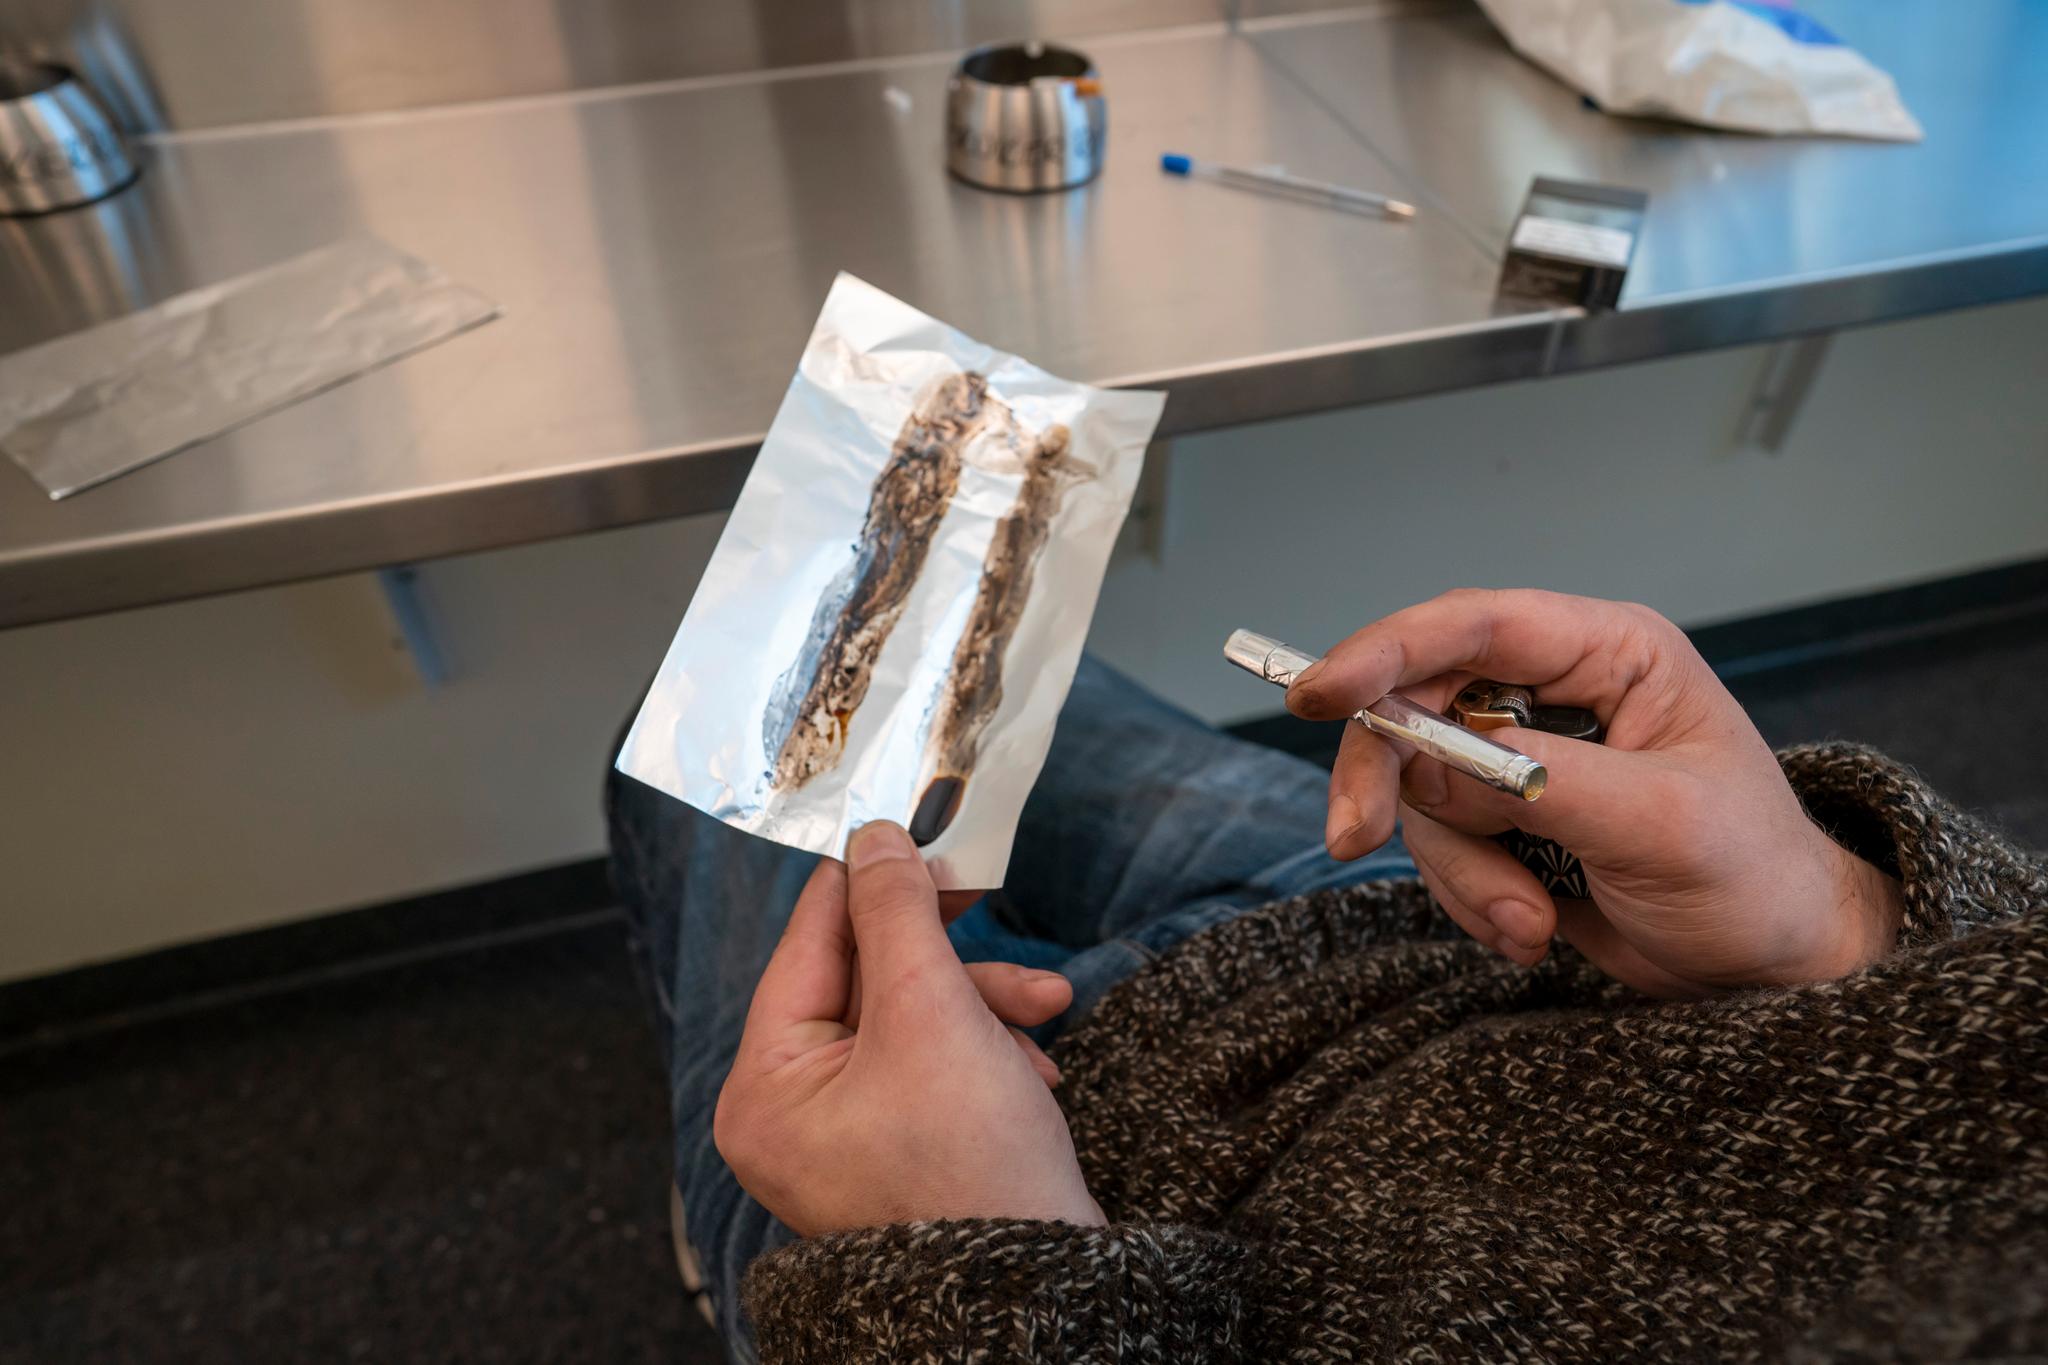 Det har vært hevdet at en avkriminalisering vil bidra til lavere overdosetall. Det er lite som tyder på at dette er en sannsynlig konsekvens, skriver innleggsforfatterne. Bildet er fra det såkalte heroinrøykerommet i Oslo. 